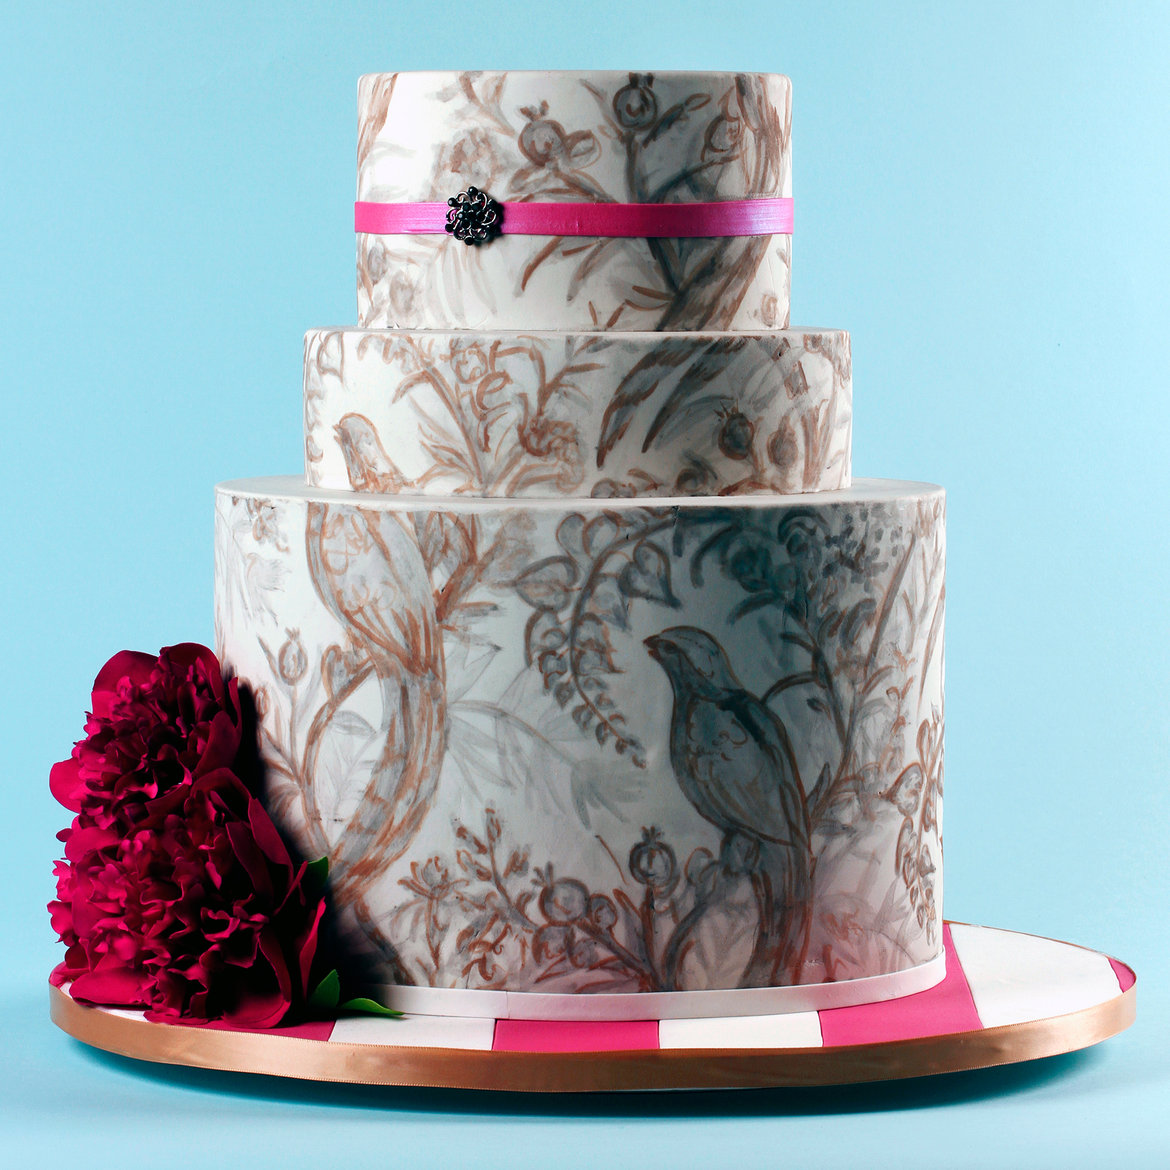 How do you price a wedding cake?